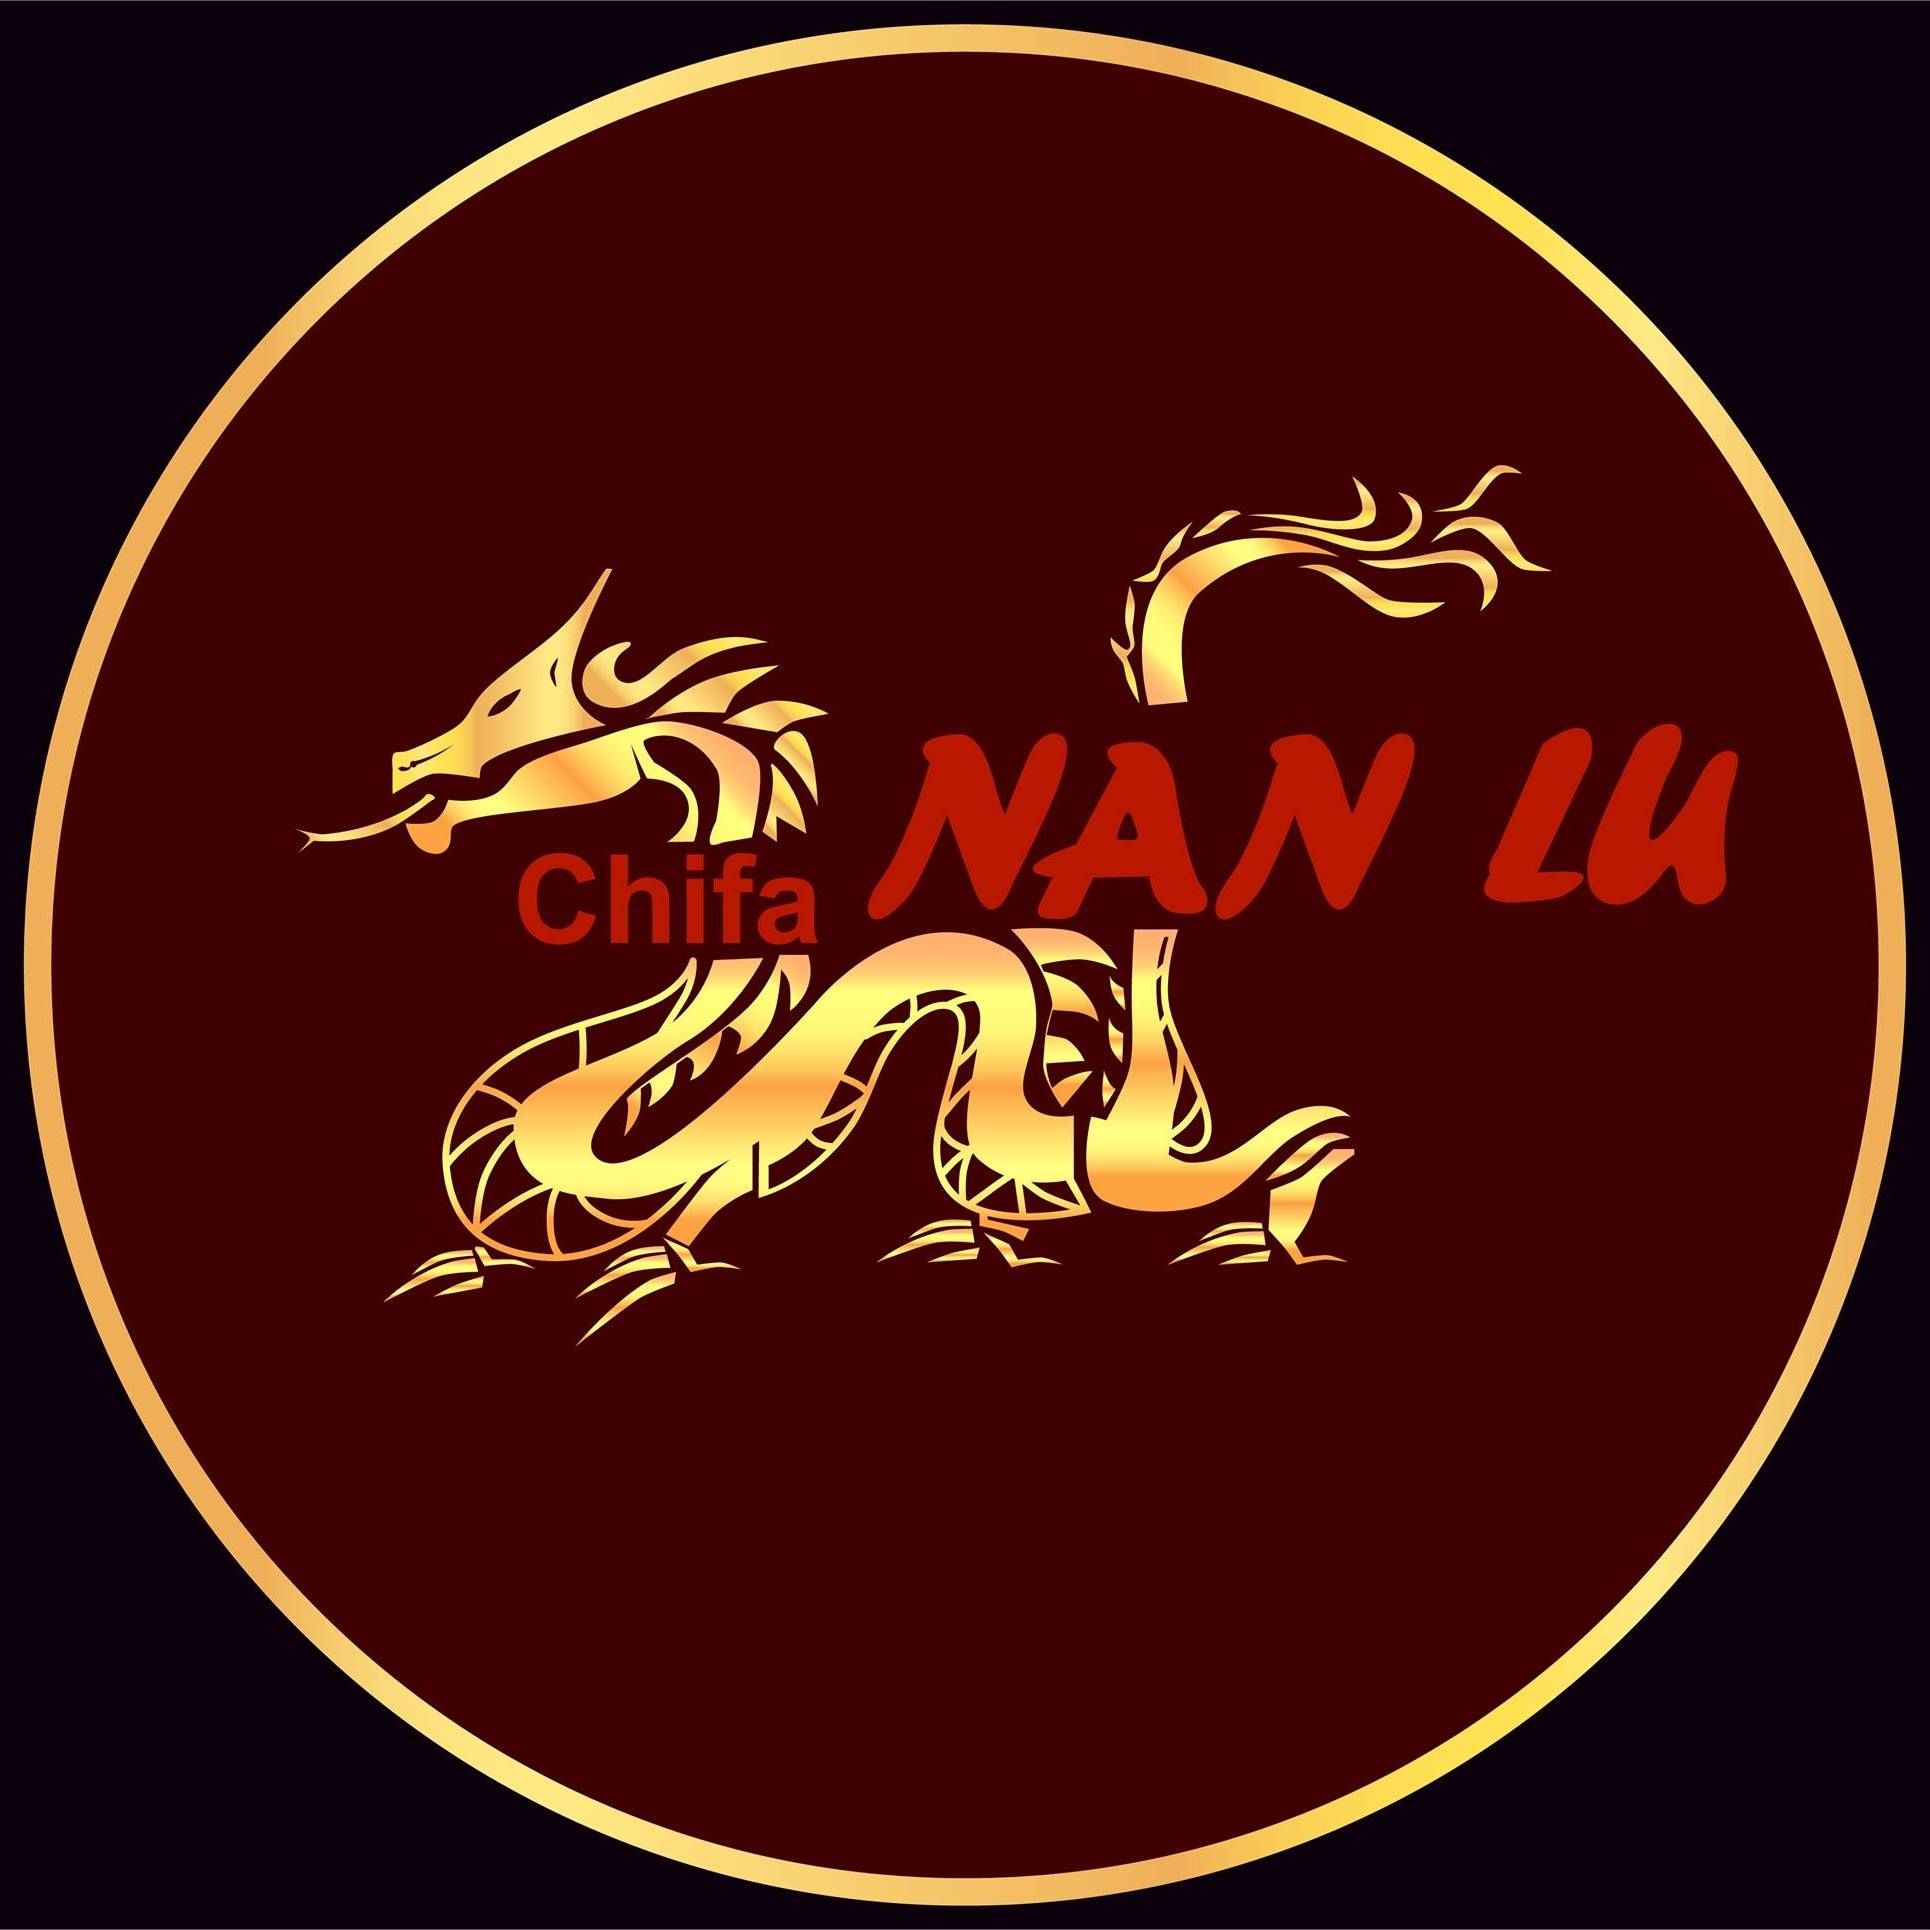 Chifa “Nan Lu”